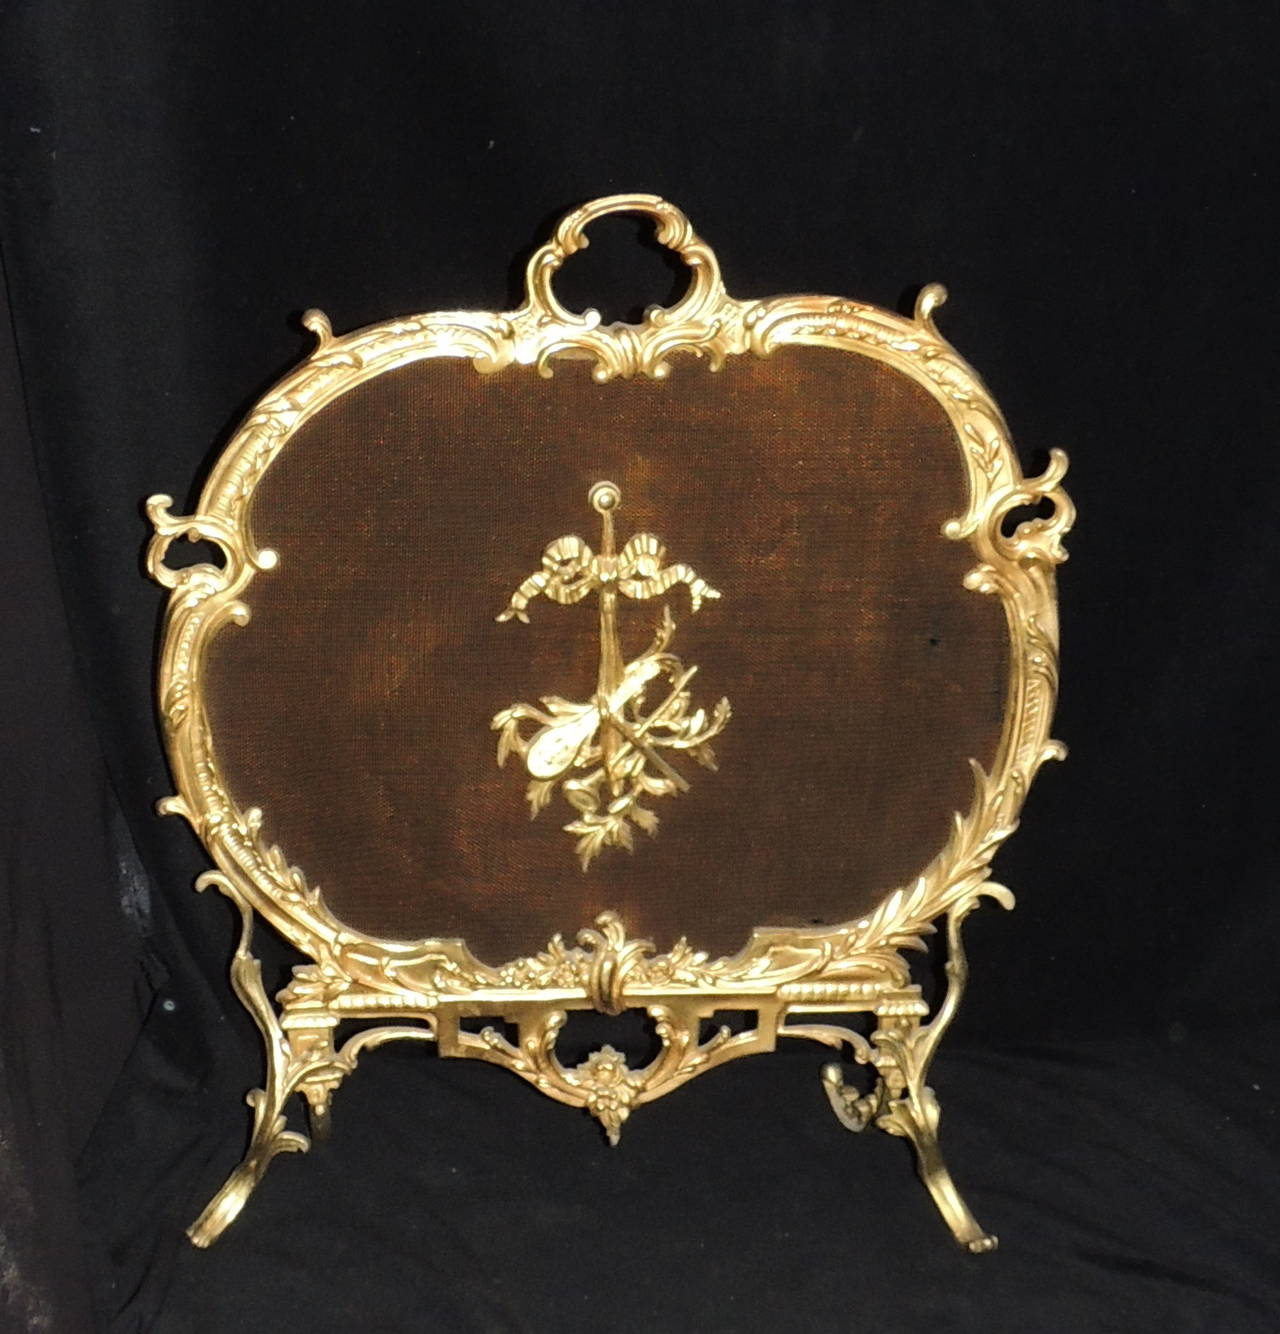 Elegant detaillierte Rokoko Französisch doré Bronze Feuer Platz Bildschirm ist kunstvoll verziert beginnend mit dem Zentrum Medaillon, das eine Laute mit musikalischen Hörnern mit schönen Band Detail gebunden ist. Der Griff und die ihn umgebende